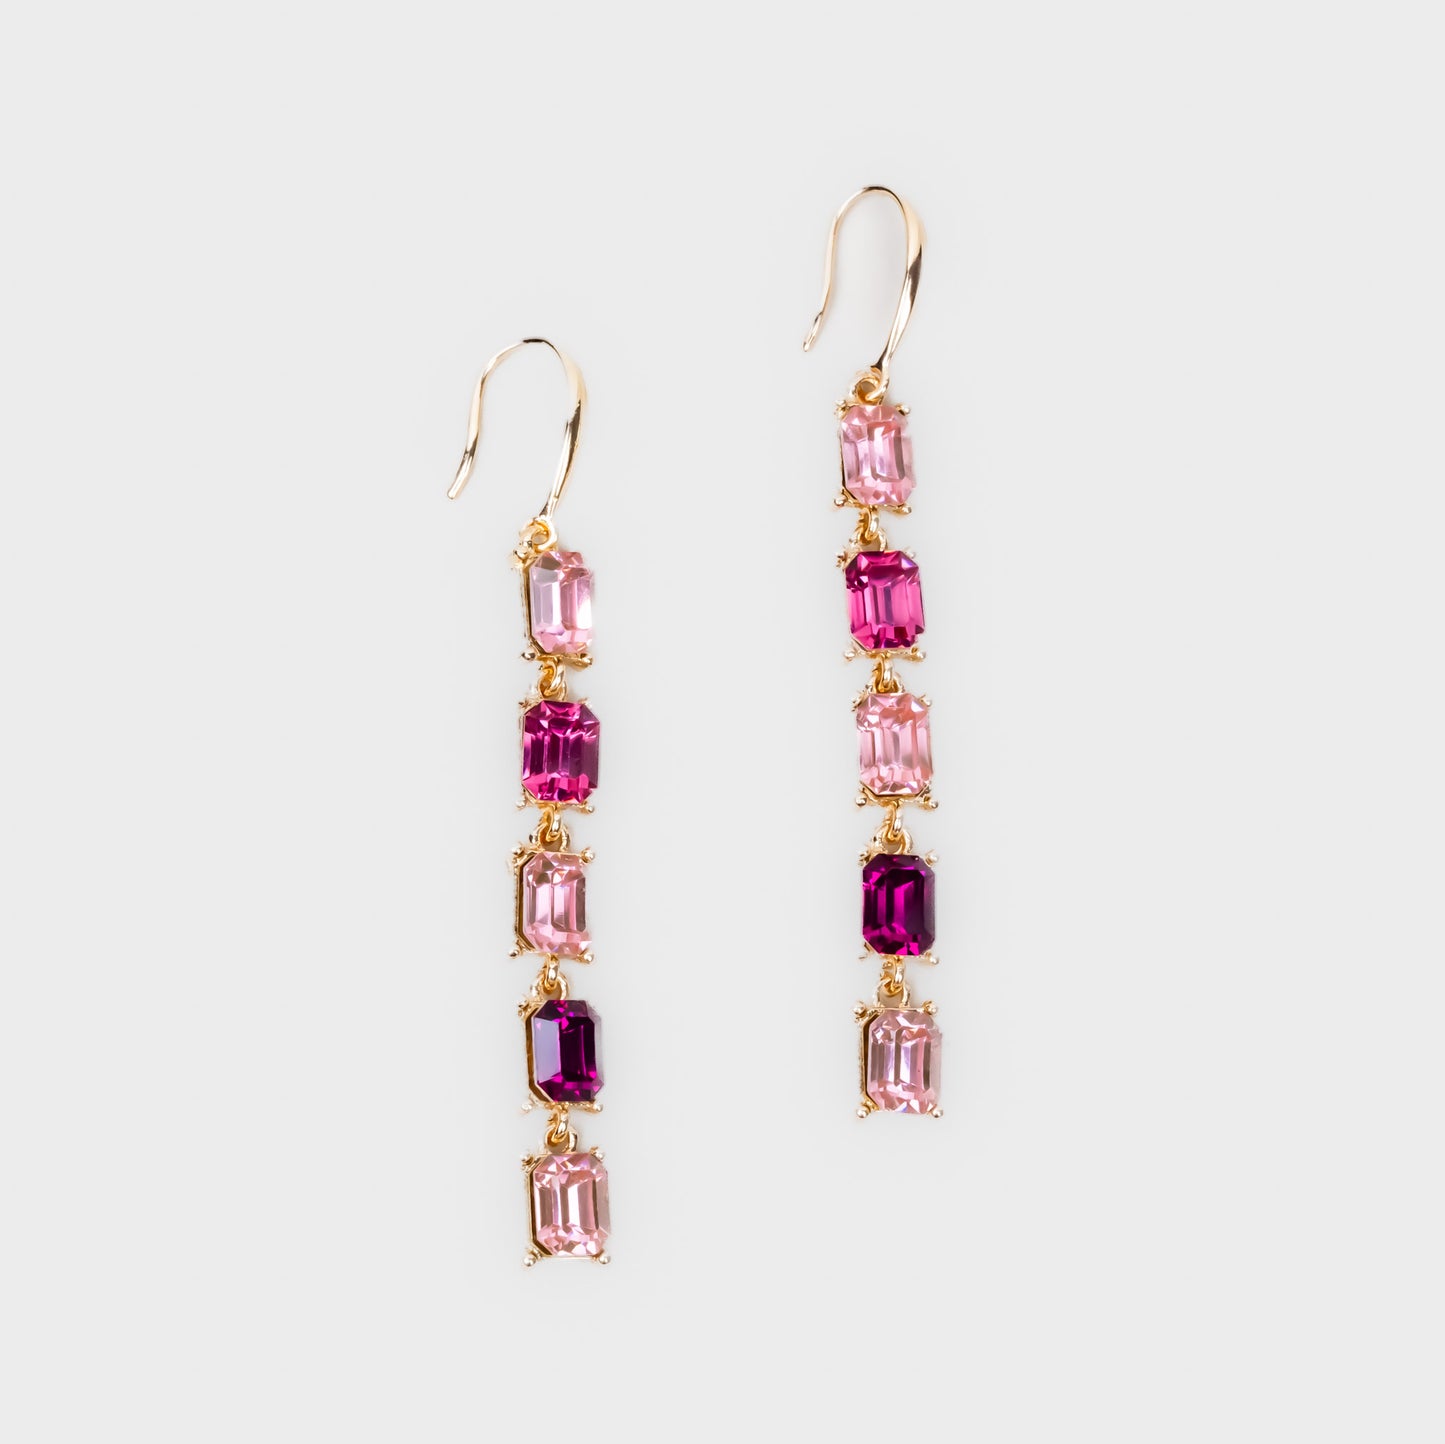 Cercei lungi eleganți pe lanț cu pietre colorate - Roz, Auriu